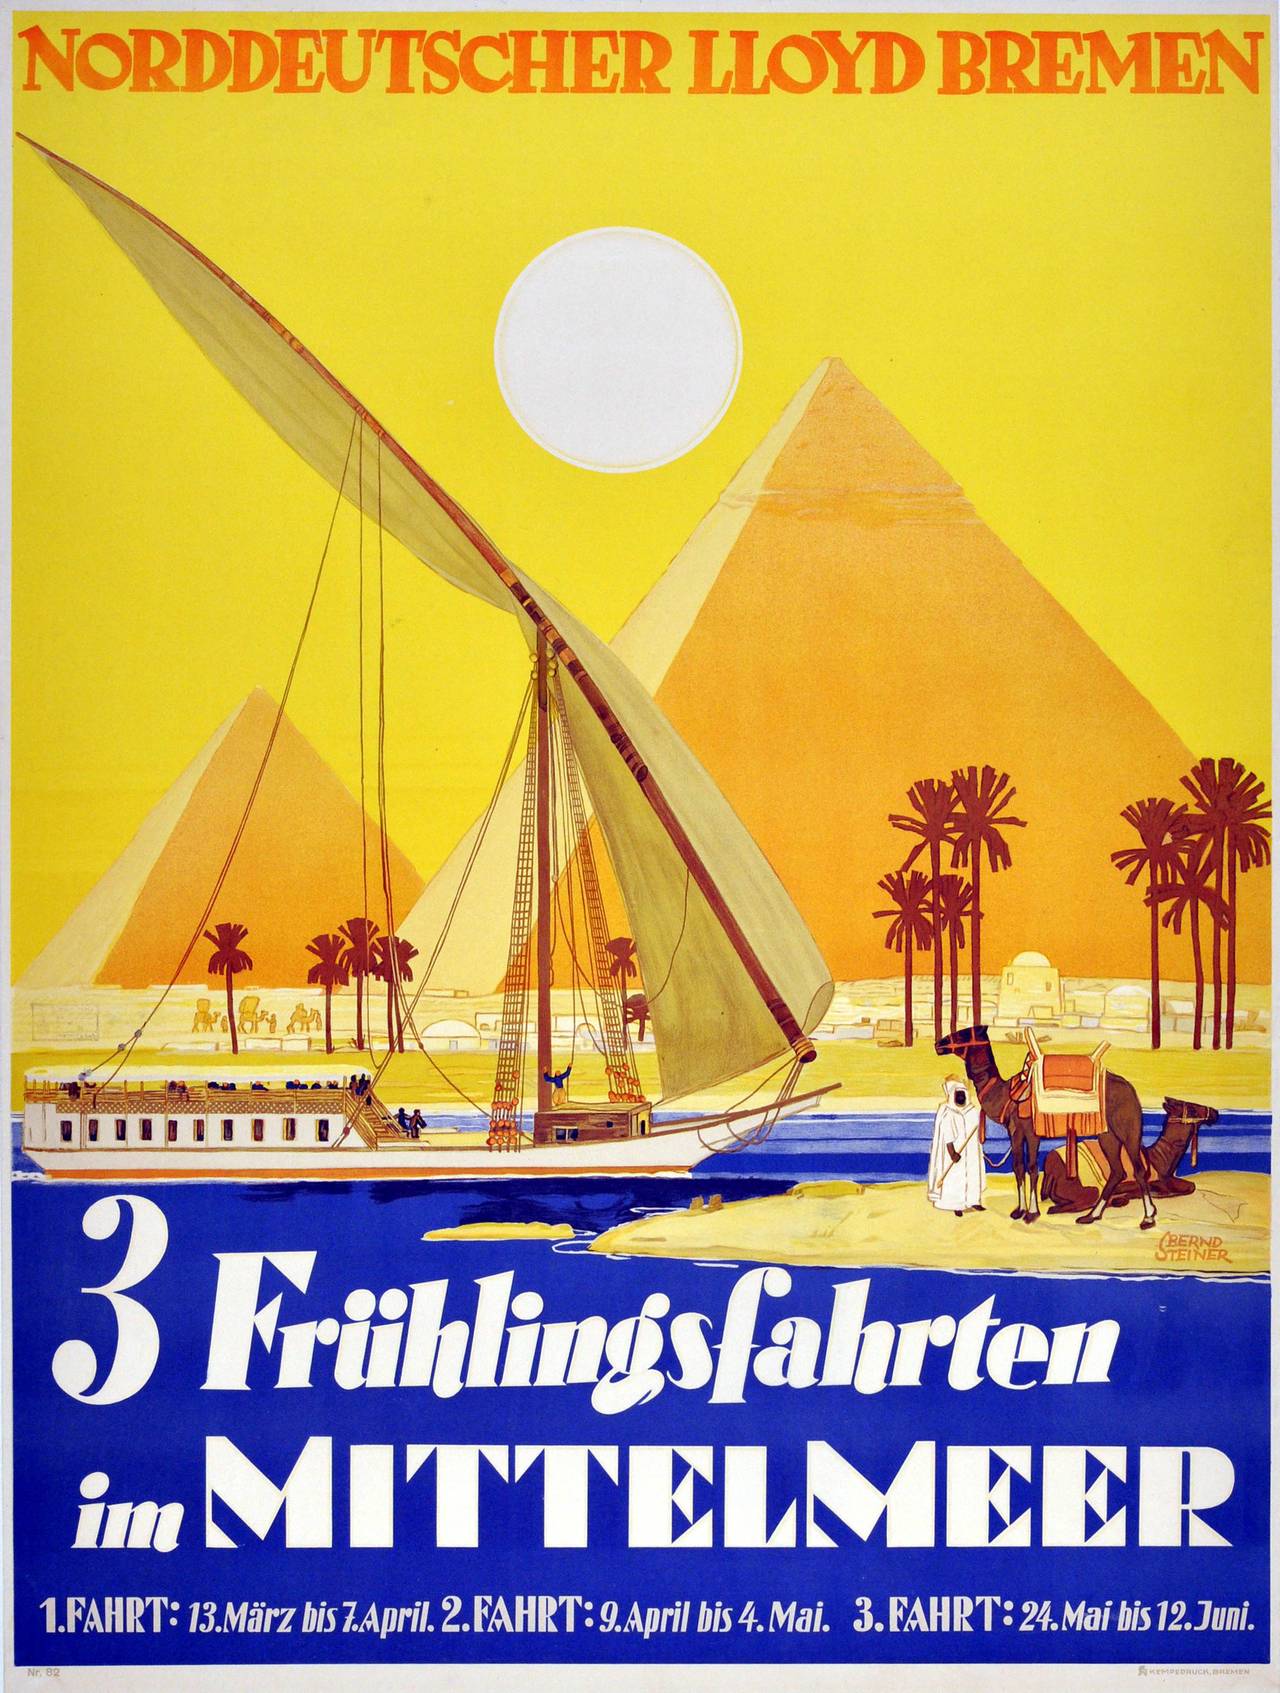 Bernd Steiner Print - Original 1920s Spring Cruises Poster For Egypt By Norddeutscher Lloyd Bremen